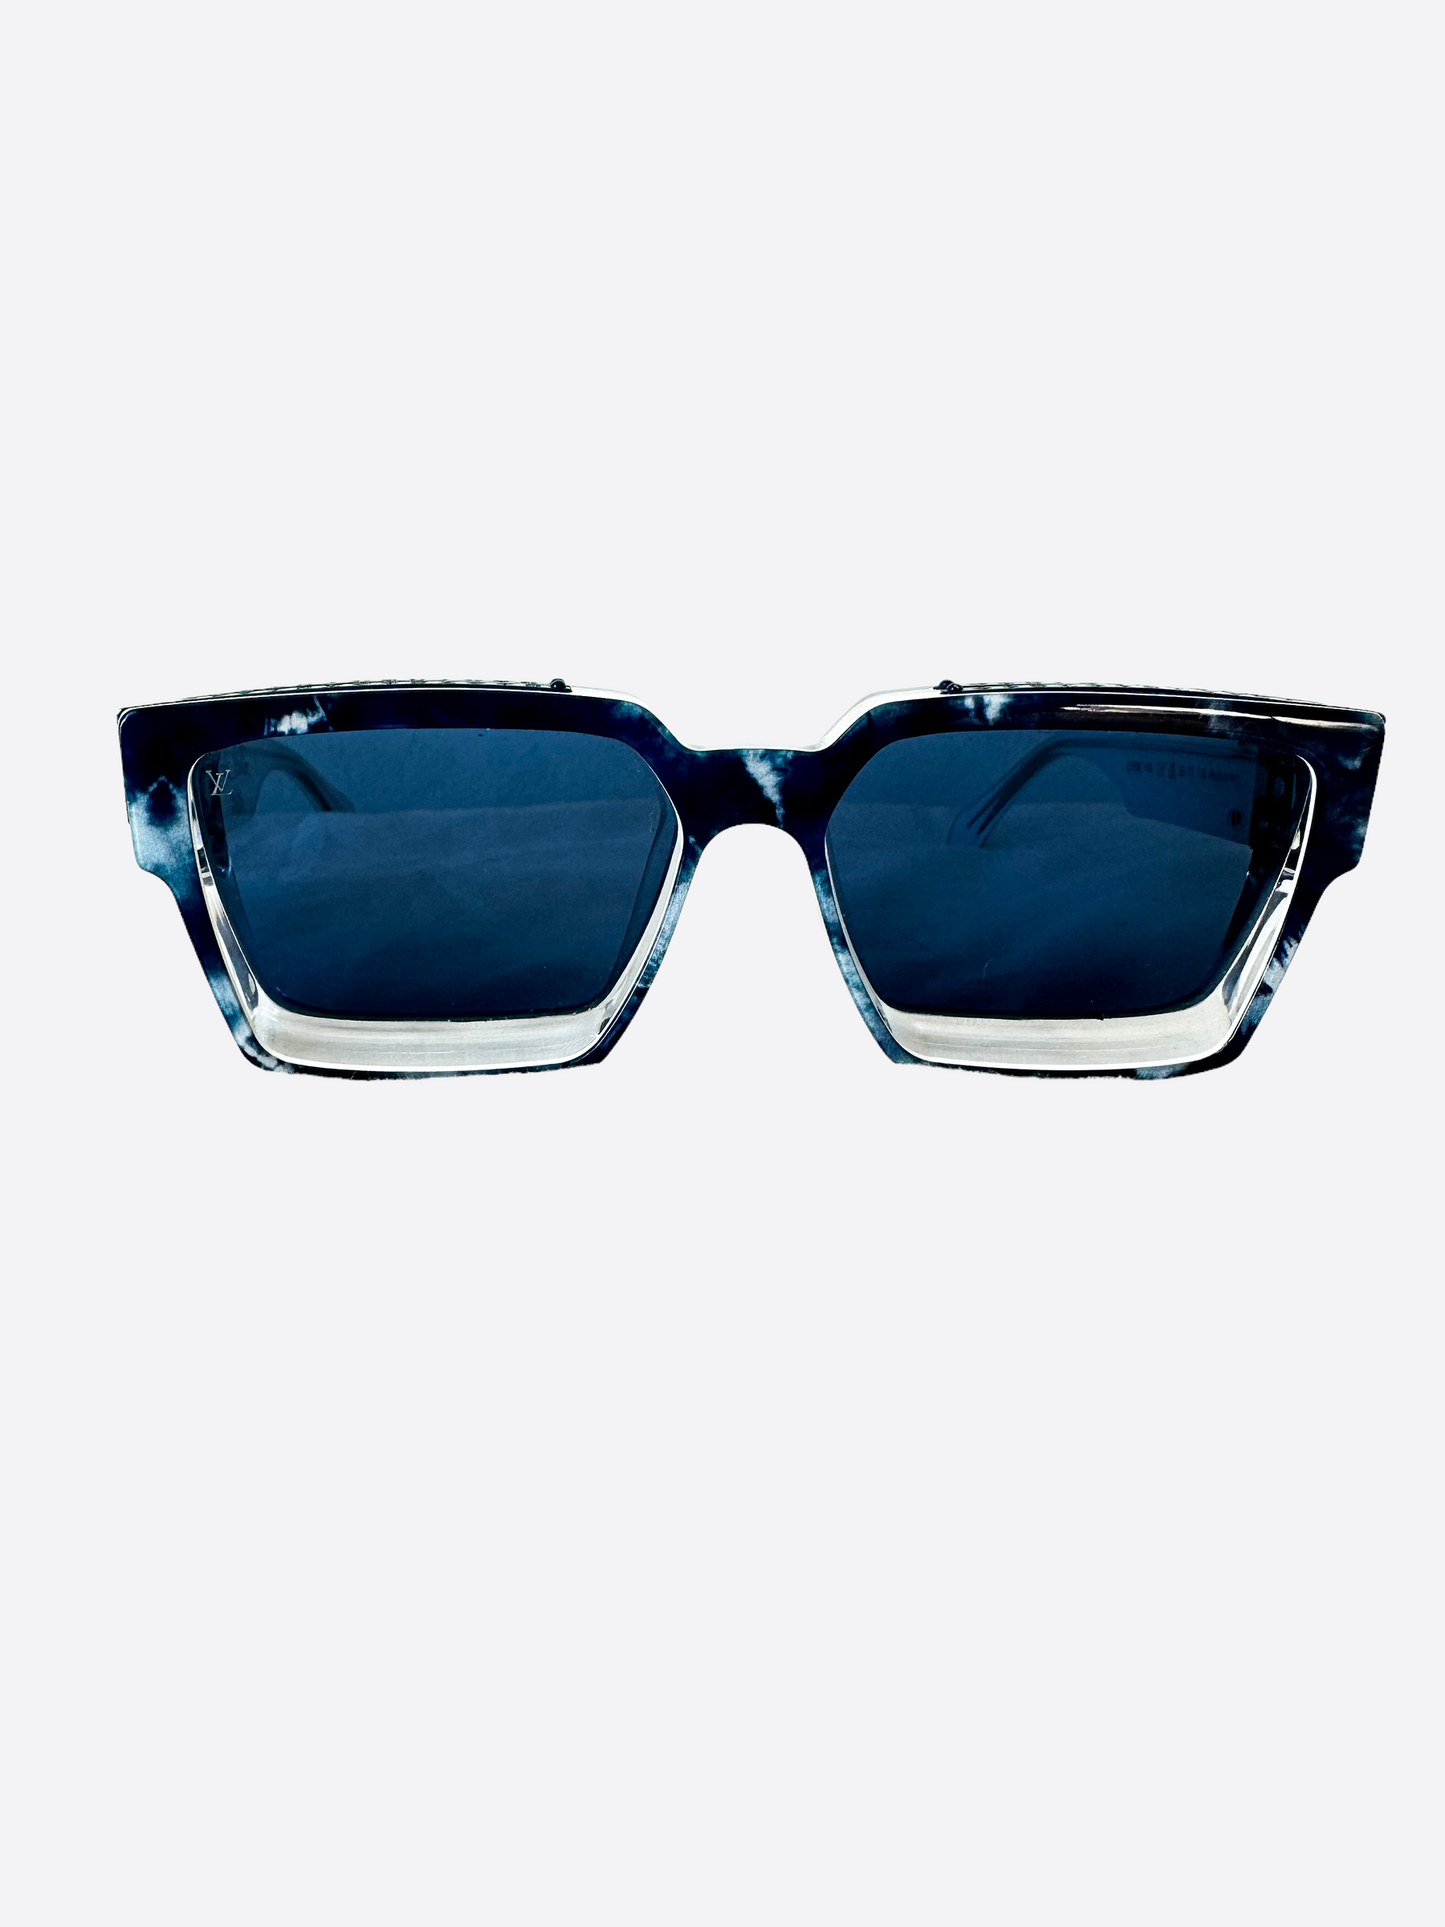 Louis Vuitton Millionaire Sunglasses - 2 For Sale on 1stDibs  lv millionaire  sunglasses, louis vuitton millionaire sunglasses original price, lv  billionaire glasses